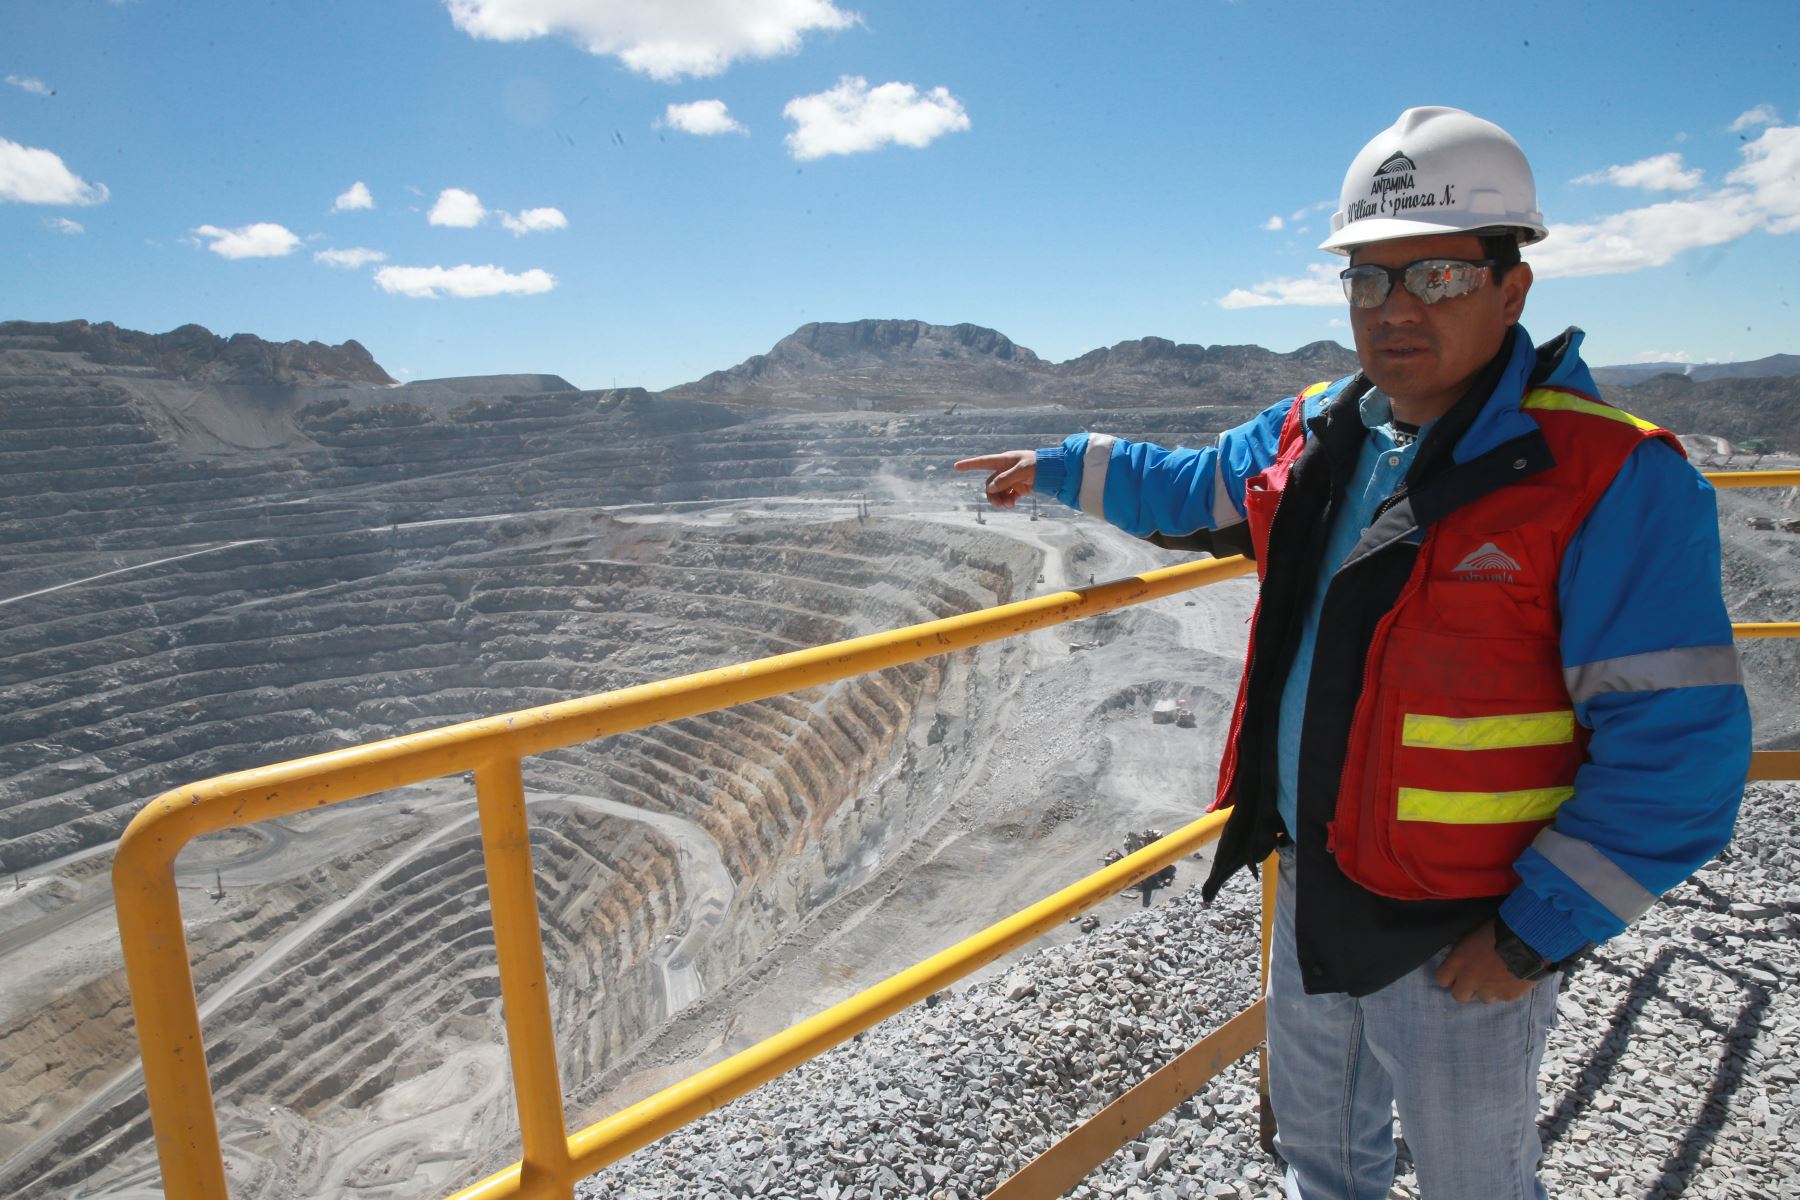 Manufactura y minería pagarían más de S/ 59,000 a sus altos directivos en 2019